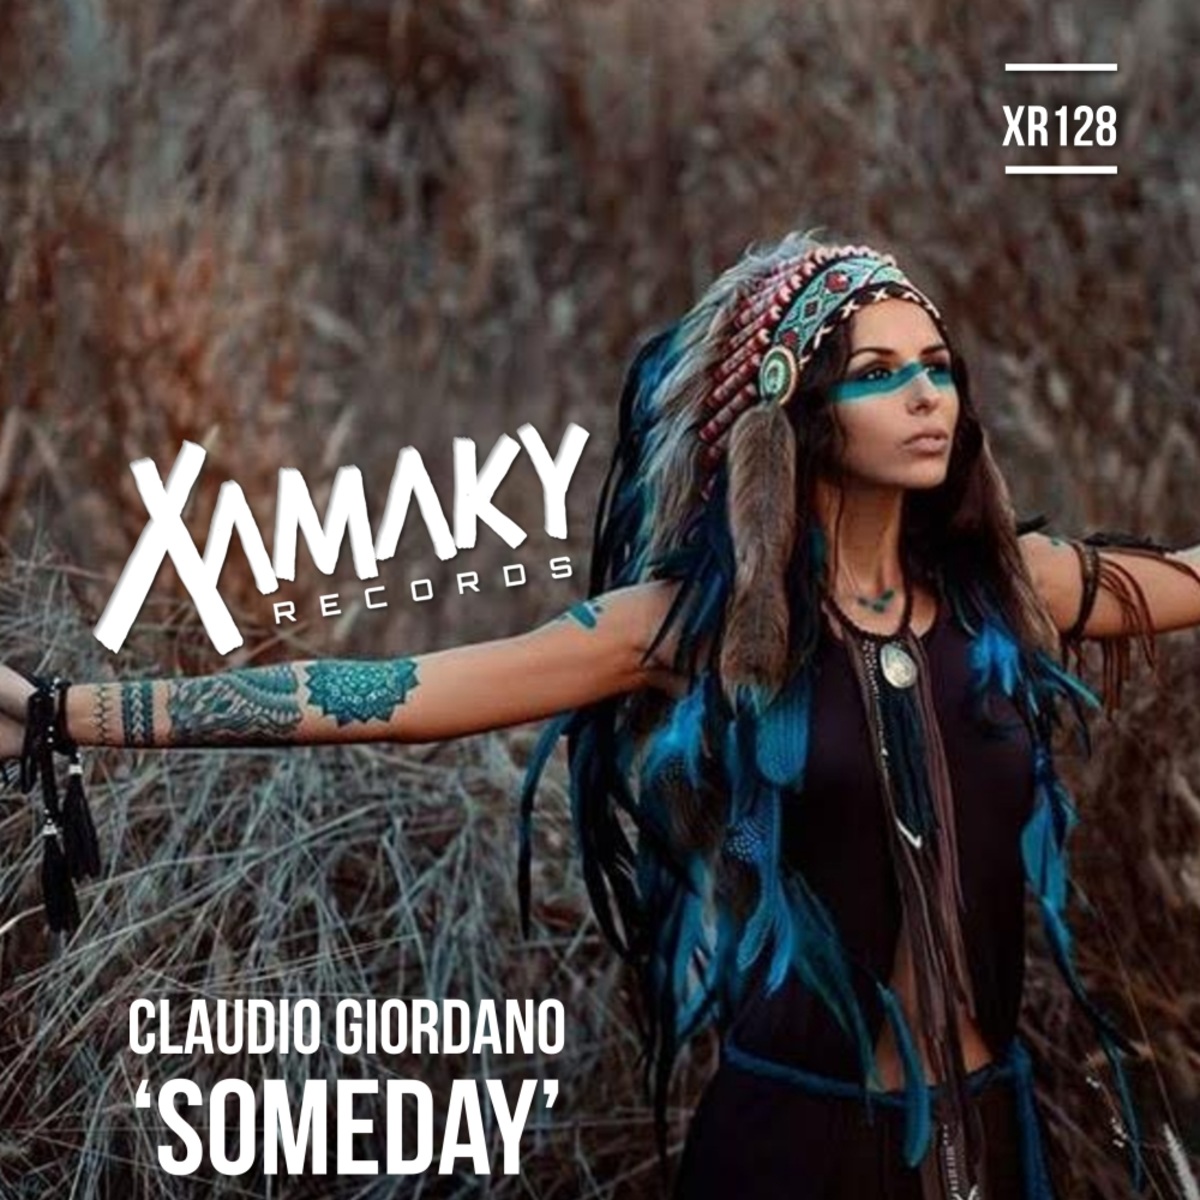 Claudio Giordano - Someday / Xamaky Records